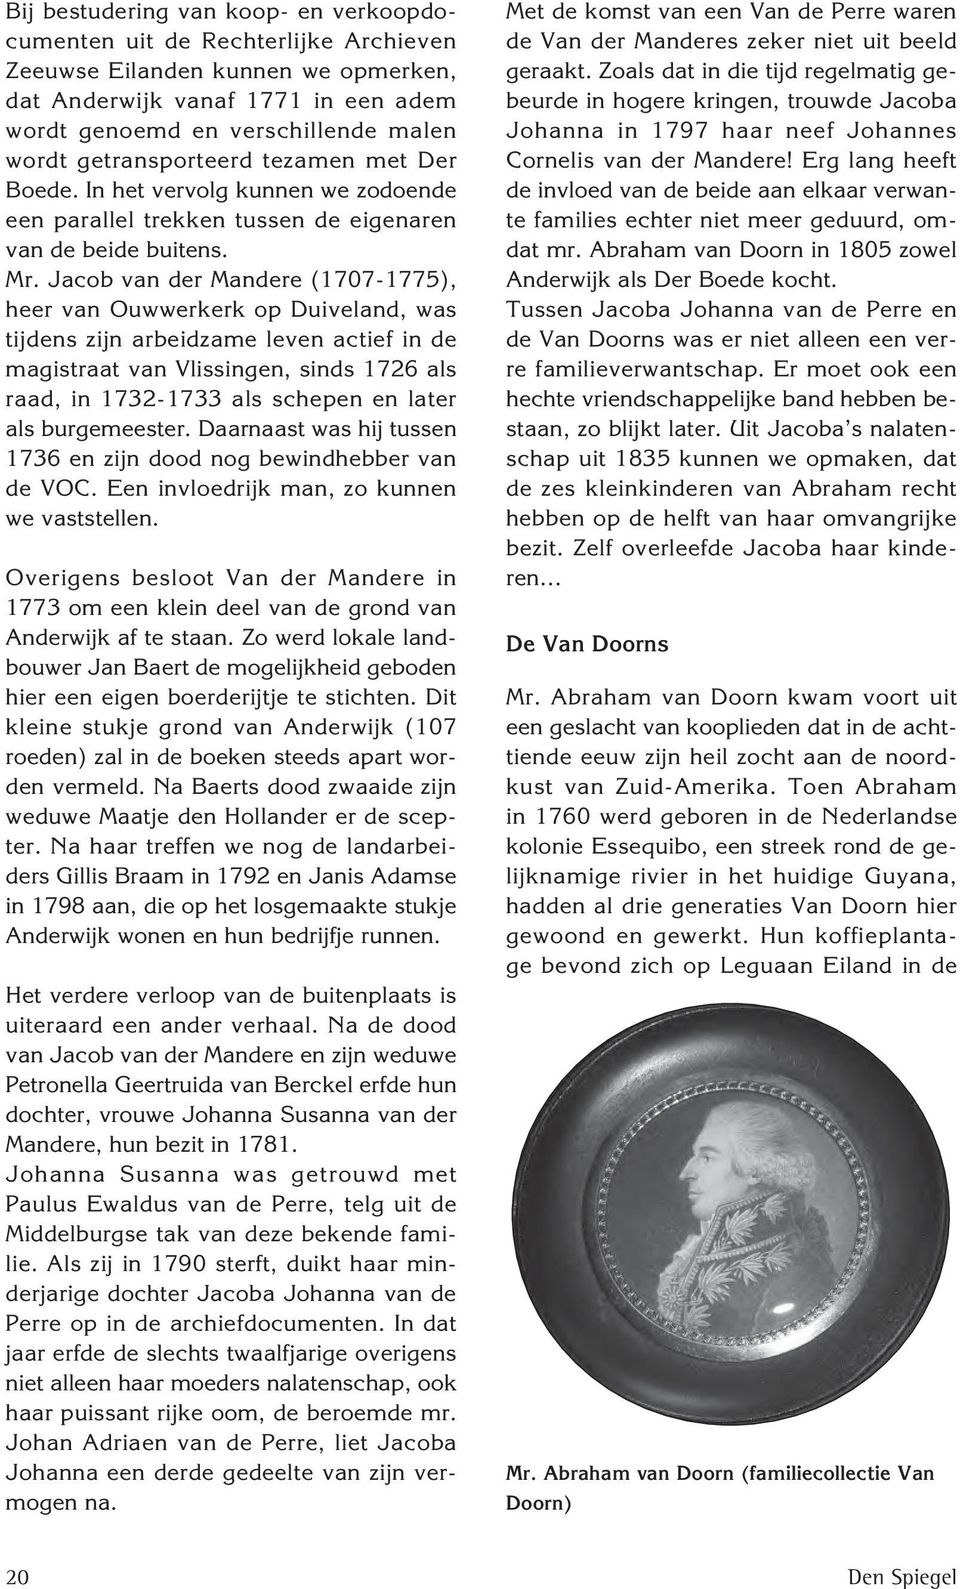 Jacob van der Mandere (1707-1775), heer van Ouwwerkerk op Duiveland, was tijdens zijn arbeidzame leven actief in de magistraat van Vlissingen, sinds 1726 als raad, in 1732-1733 als schepen en later